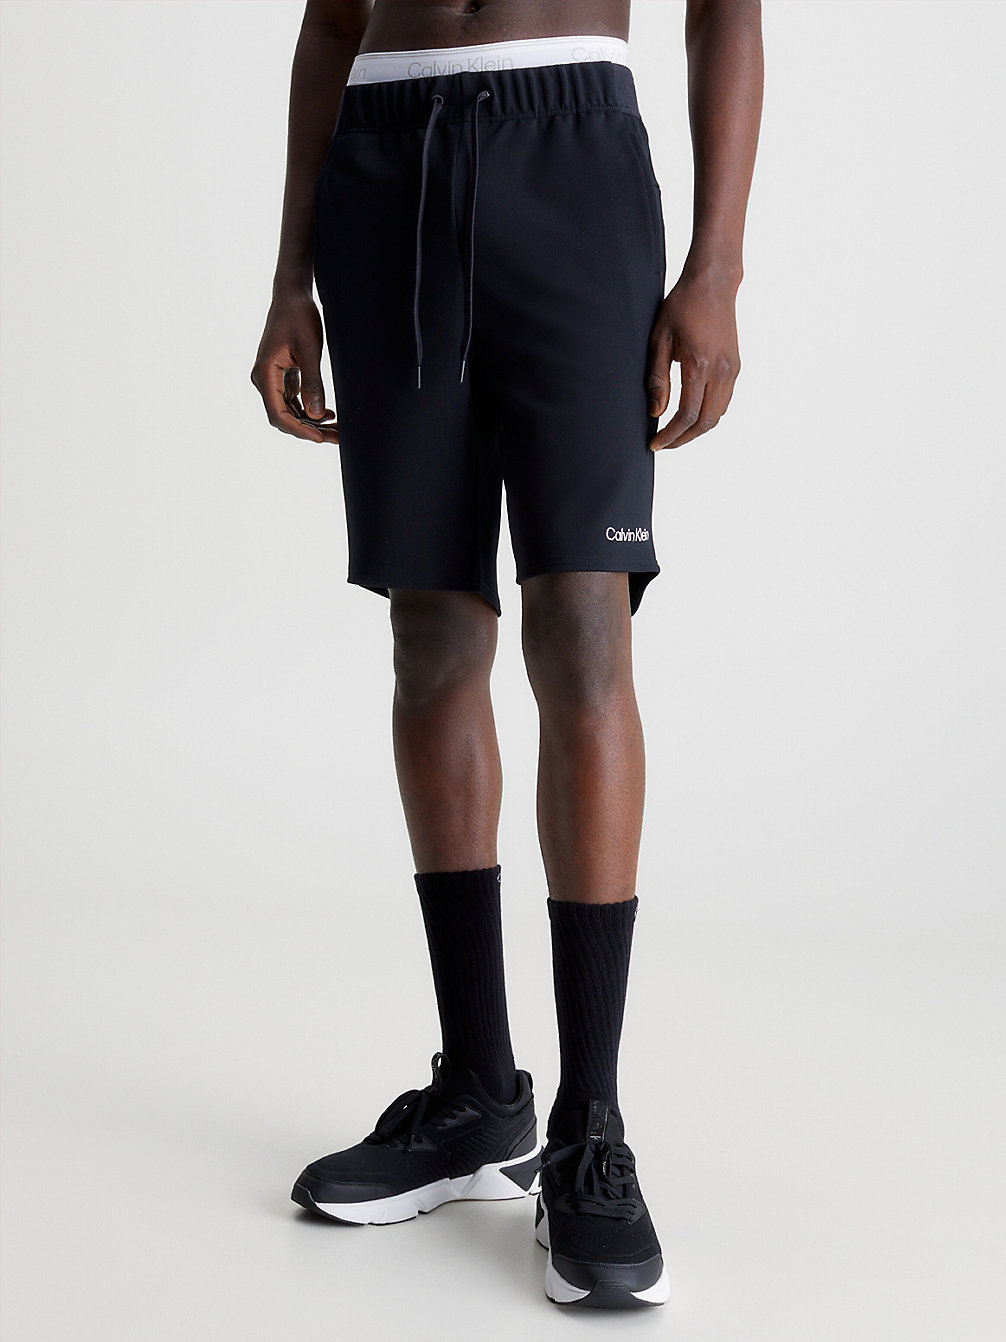 BLACK BEAUTY > Strukturierte Gym Shorts > undefined Herren - Calvin Klein